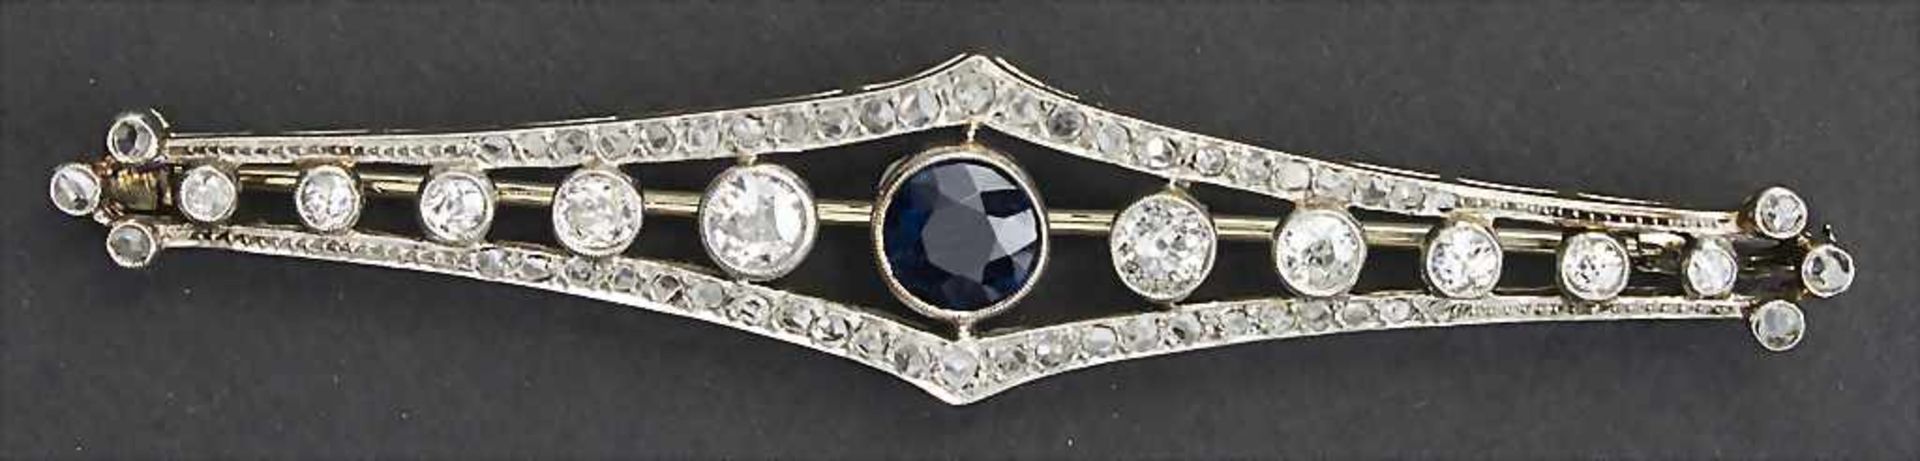 Art Déco Brosche mit Saphiren und Diamanten / An Art Déco brooch with Sapphires and Diamonds, um